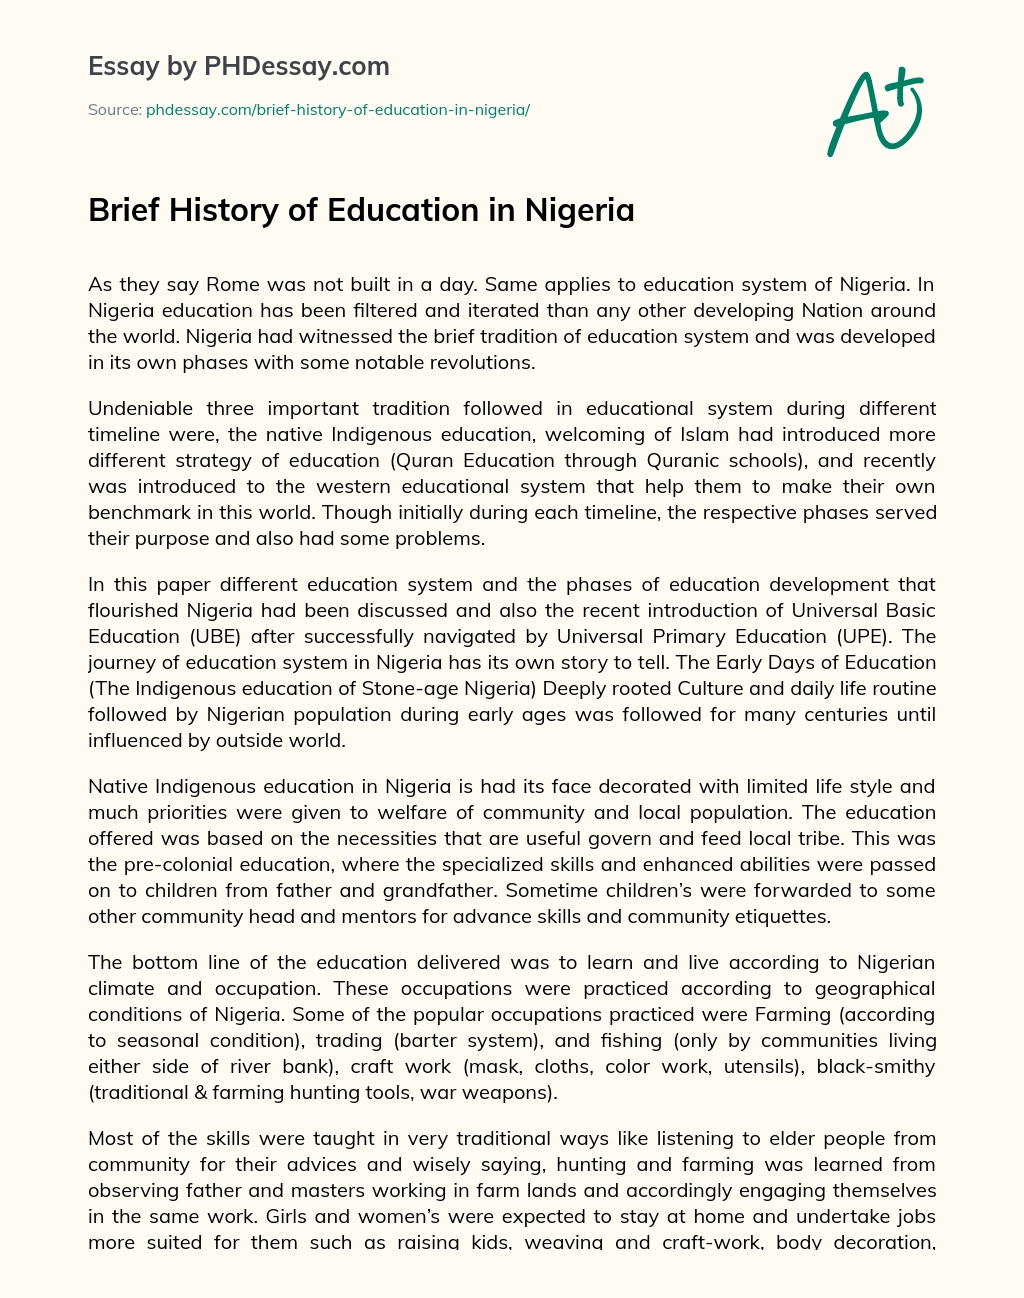 Brief History of Education in Nigeria essay